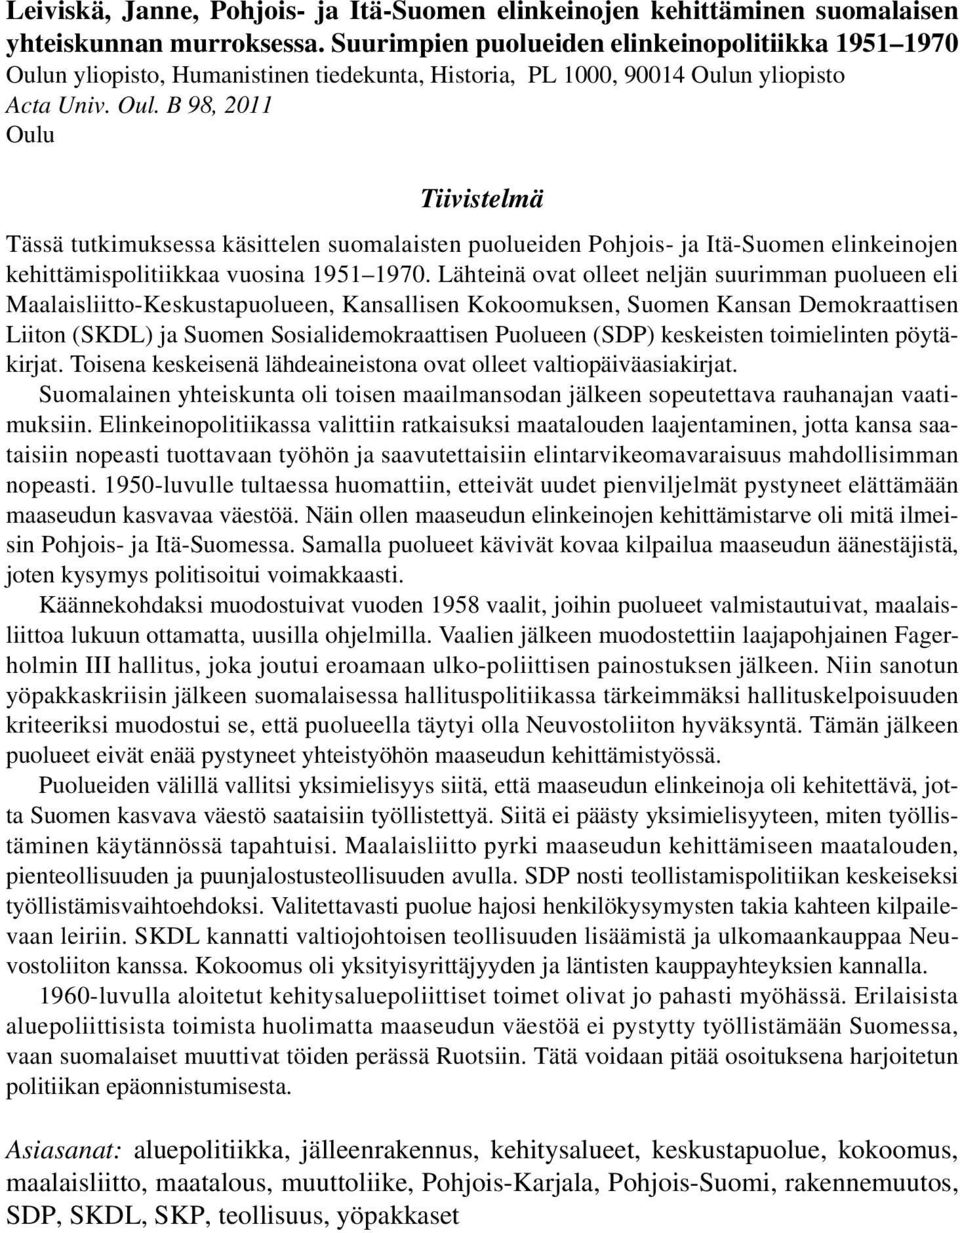 n yliopisto, Humanistinen tiedekunta, Historia, PL 1000, 90014 Oulu